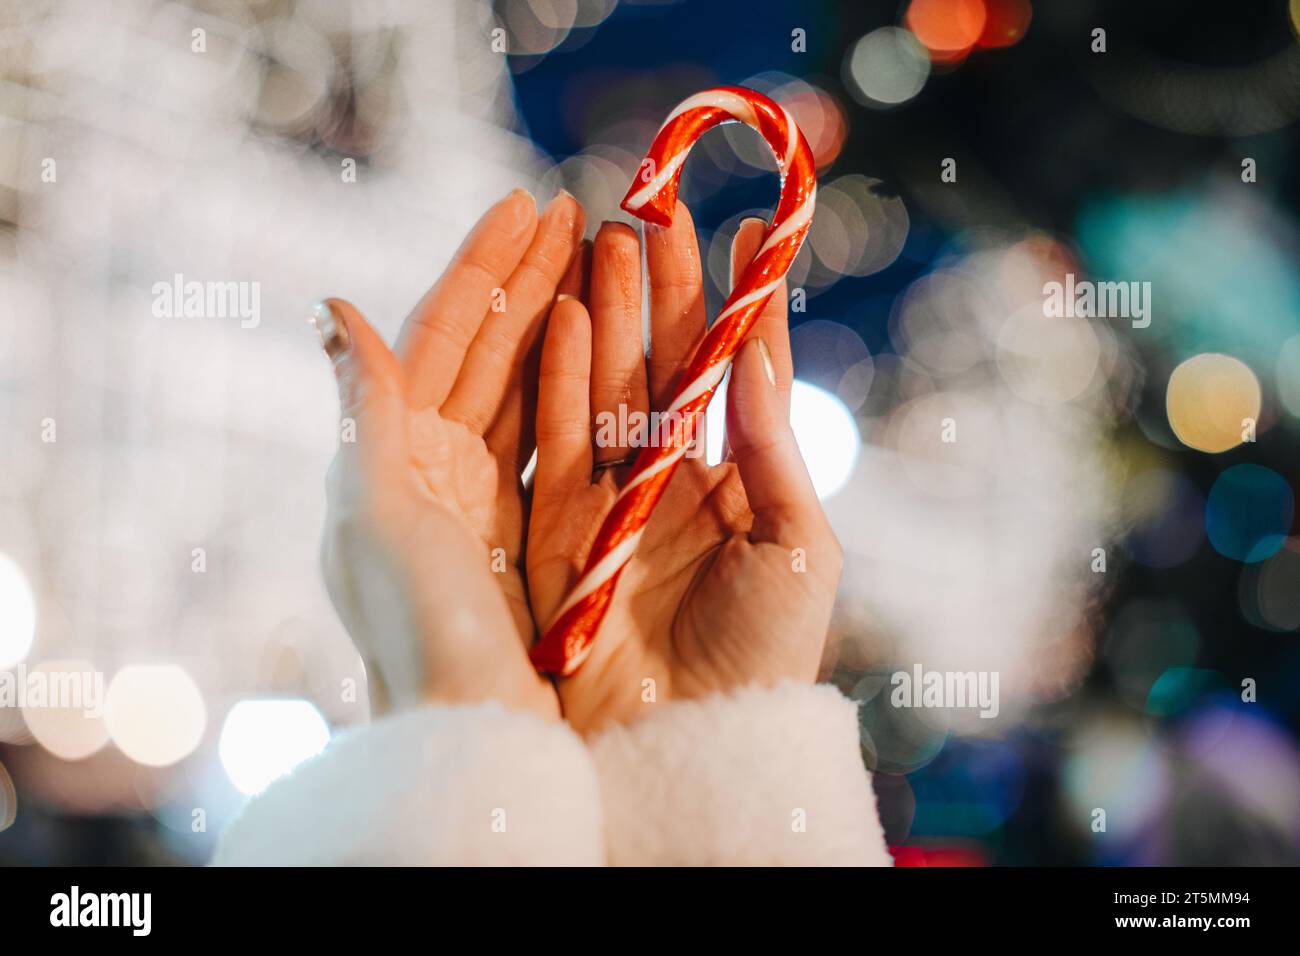 Détails de fée de vacances de Noël. Mains féminines tenant rouge blanc canne sucrée sucrée sucrée sucrée sucrée sur le fond de l'éclairage magique bleu argent. Banque D'Images